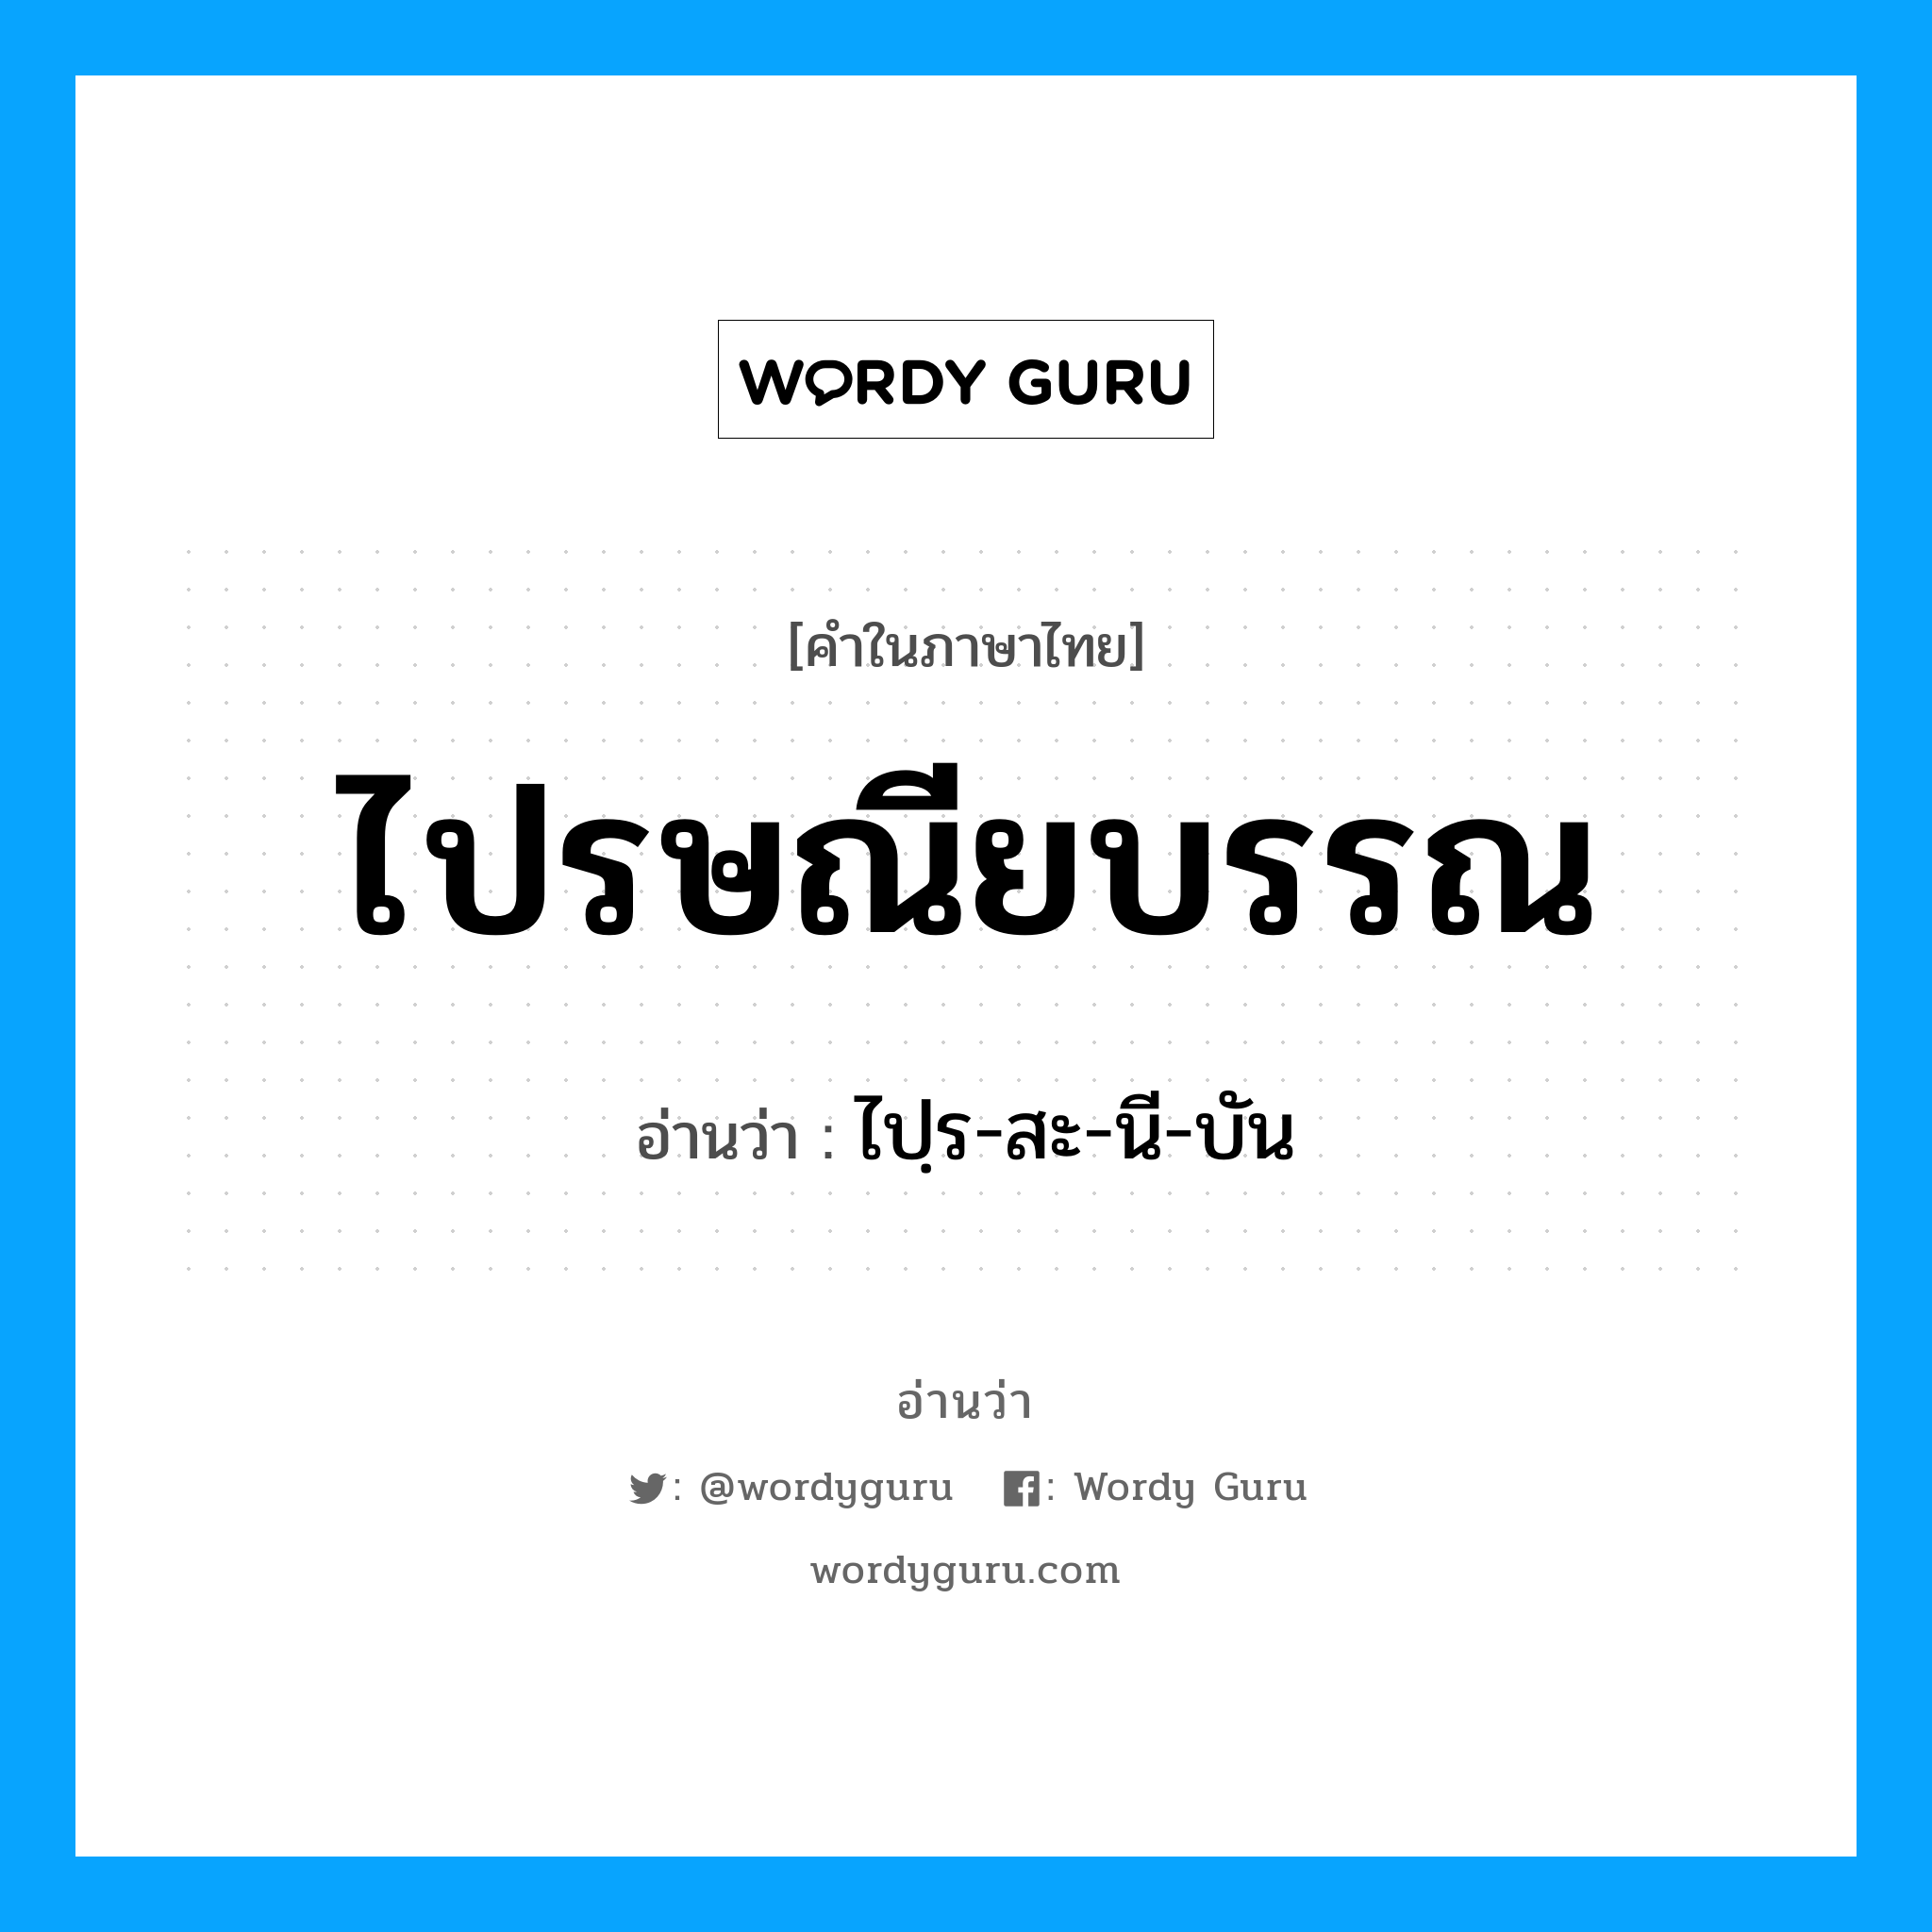 ไปฺร-สะ-นี-บัน เป็นคำอ่านของคำไหน?, คำในภาษาไทย ไปฺร-สะ-นี-บัน อ่านว่า ไปรษณียบรรณ